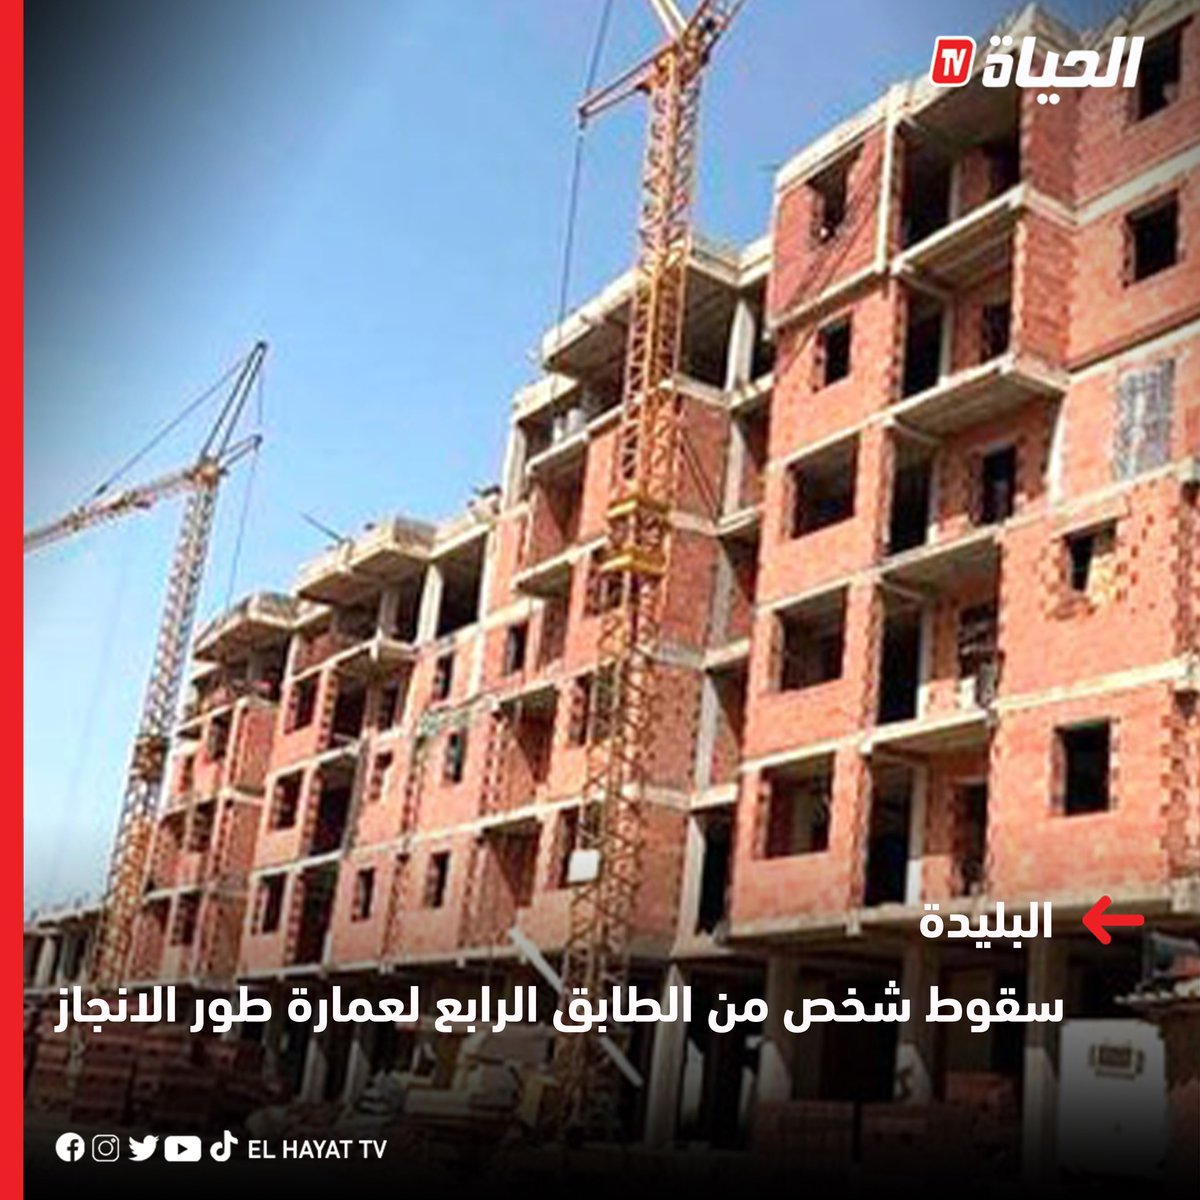 📷البليدة : سقوط شخص يبلغ من العمر 50 سنة من الطابق الرابع لعمارة طور الانجاز  ببلدية بوعينان